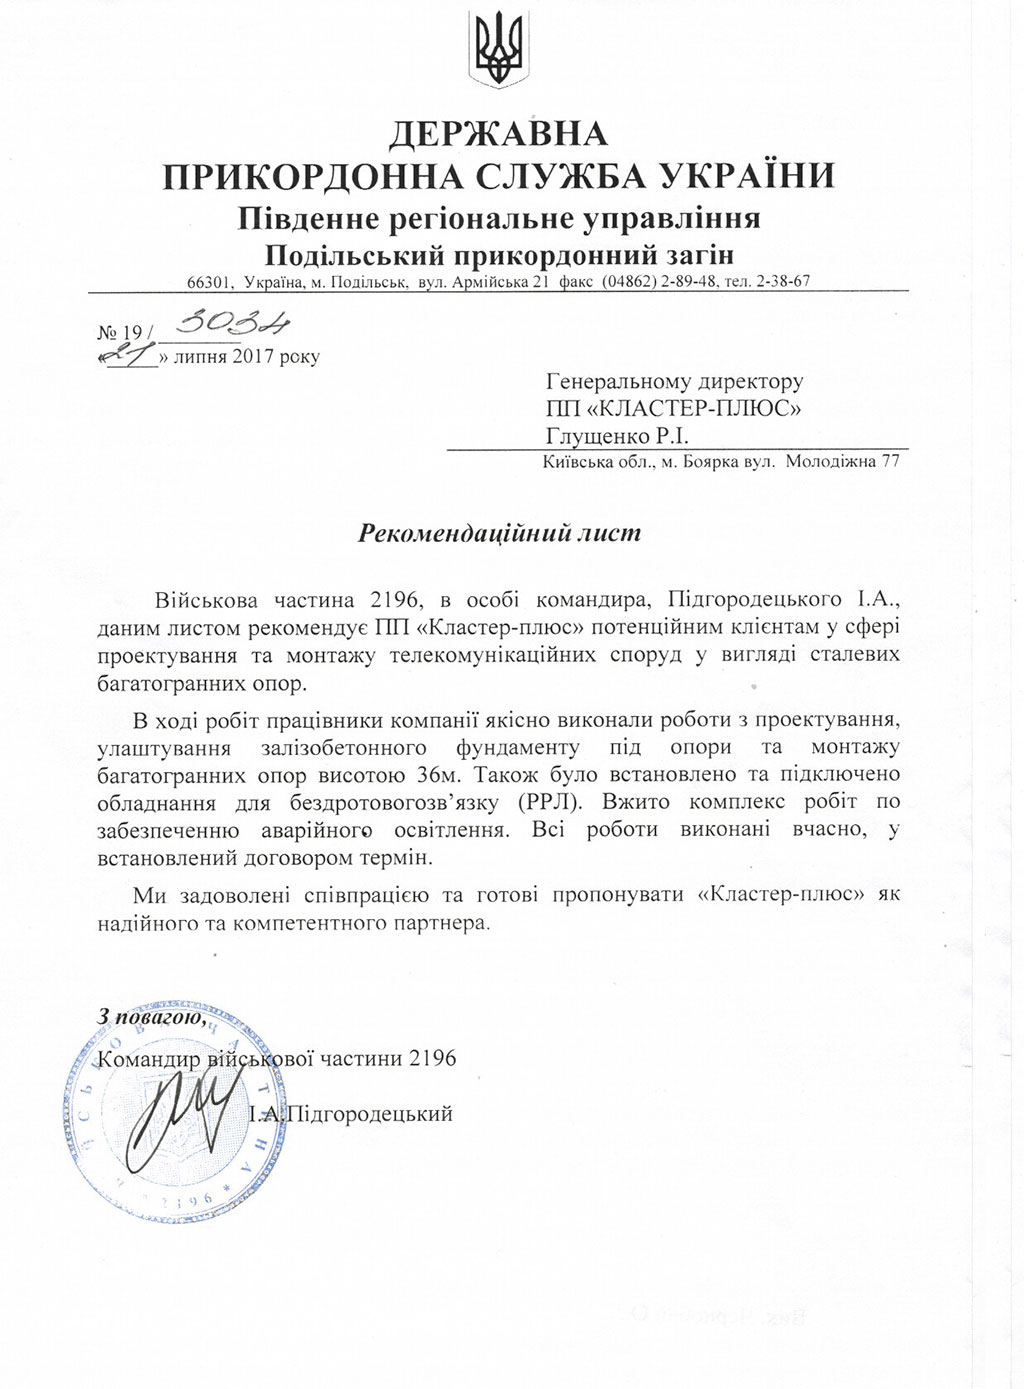 Рекомендаційний лист від ДПС України ВЧ №2196